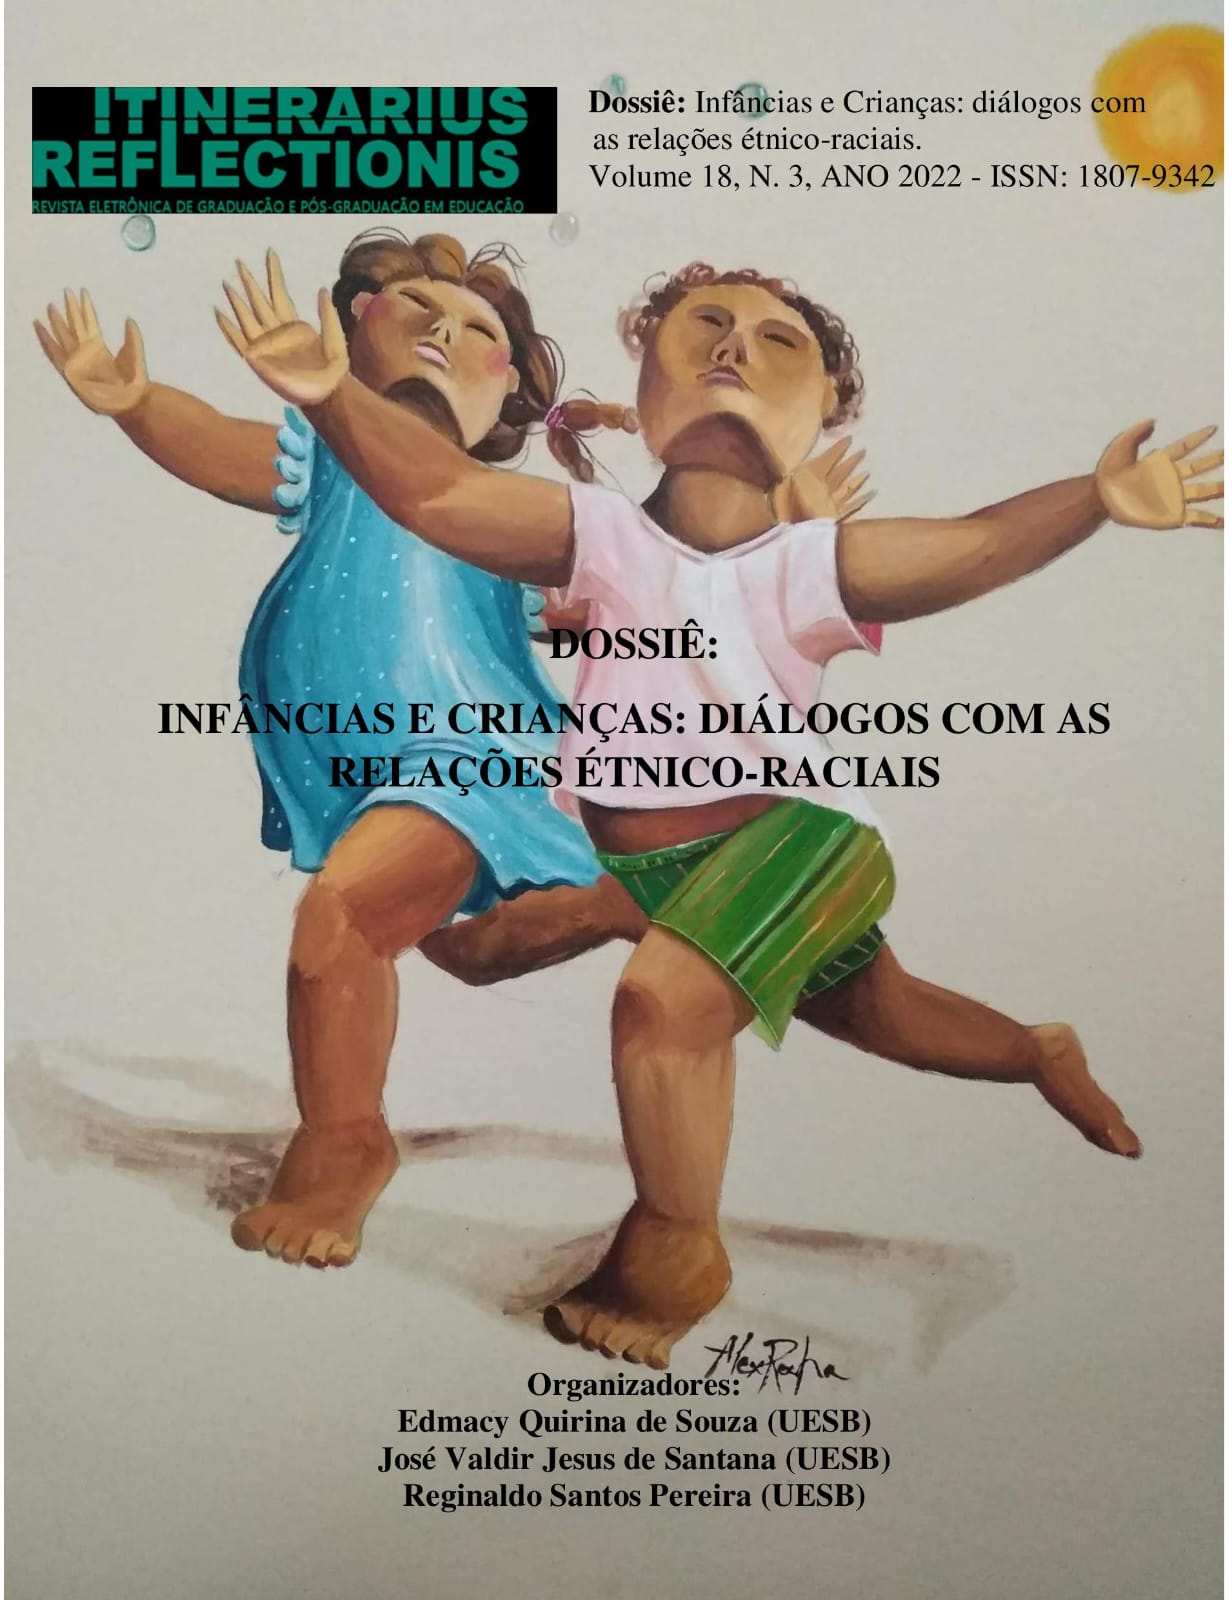 					Ver Vol. 18 Núm. 3 (2022): Dossiê Infâncias e Crianças - Diálogos com as Relações Étnicos-Raciais
				